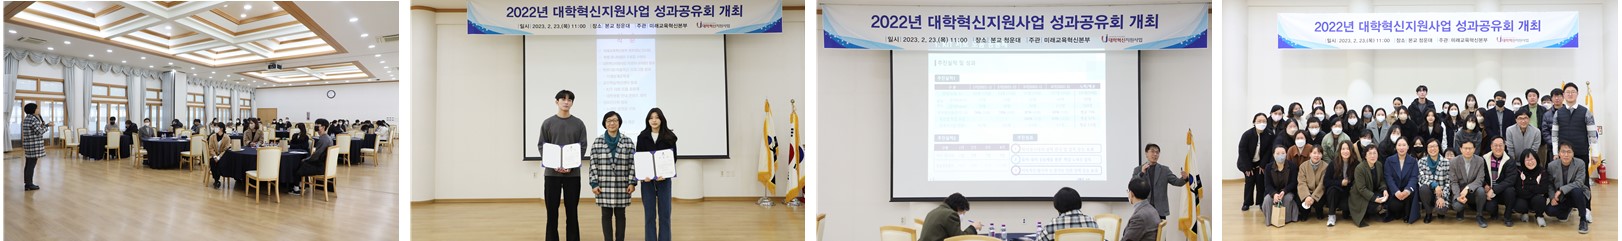 2022년 대학혁신지원사업 성과공유회 개최